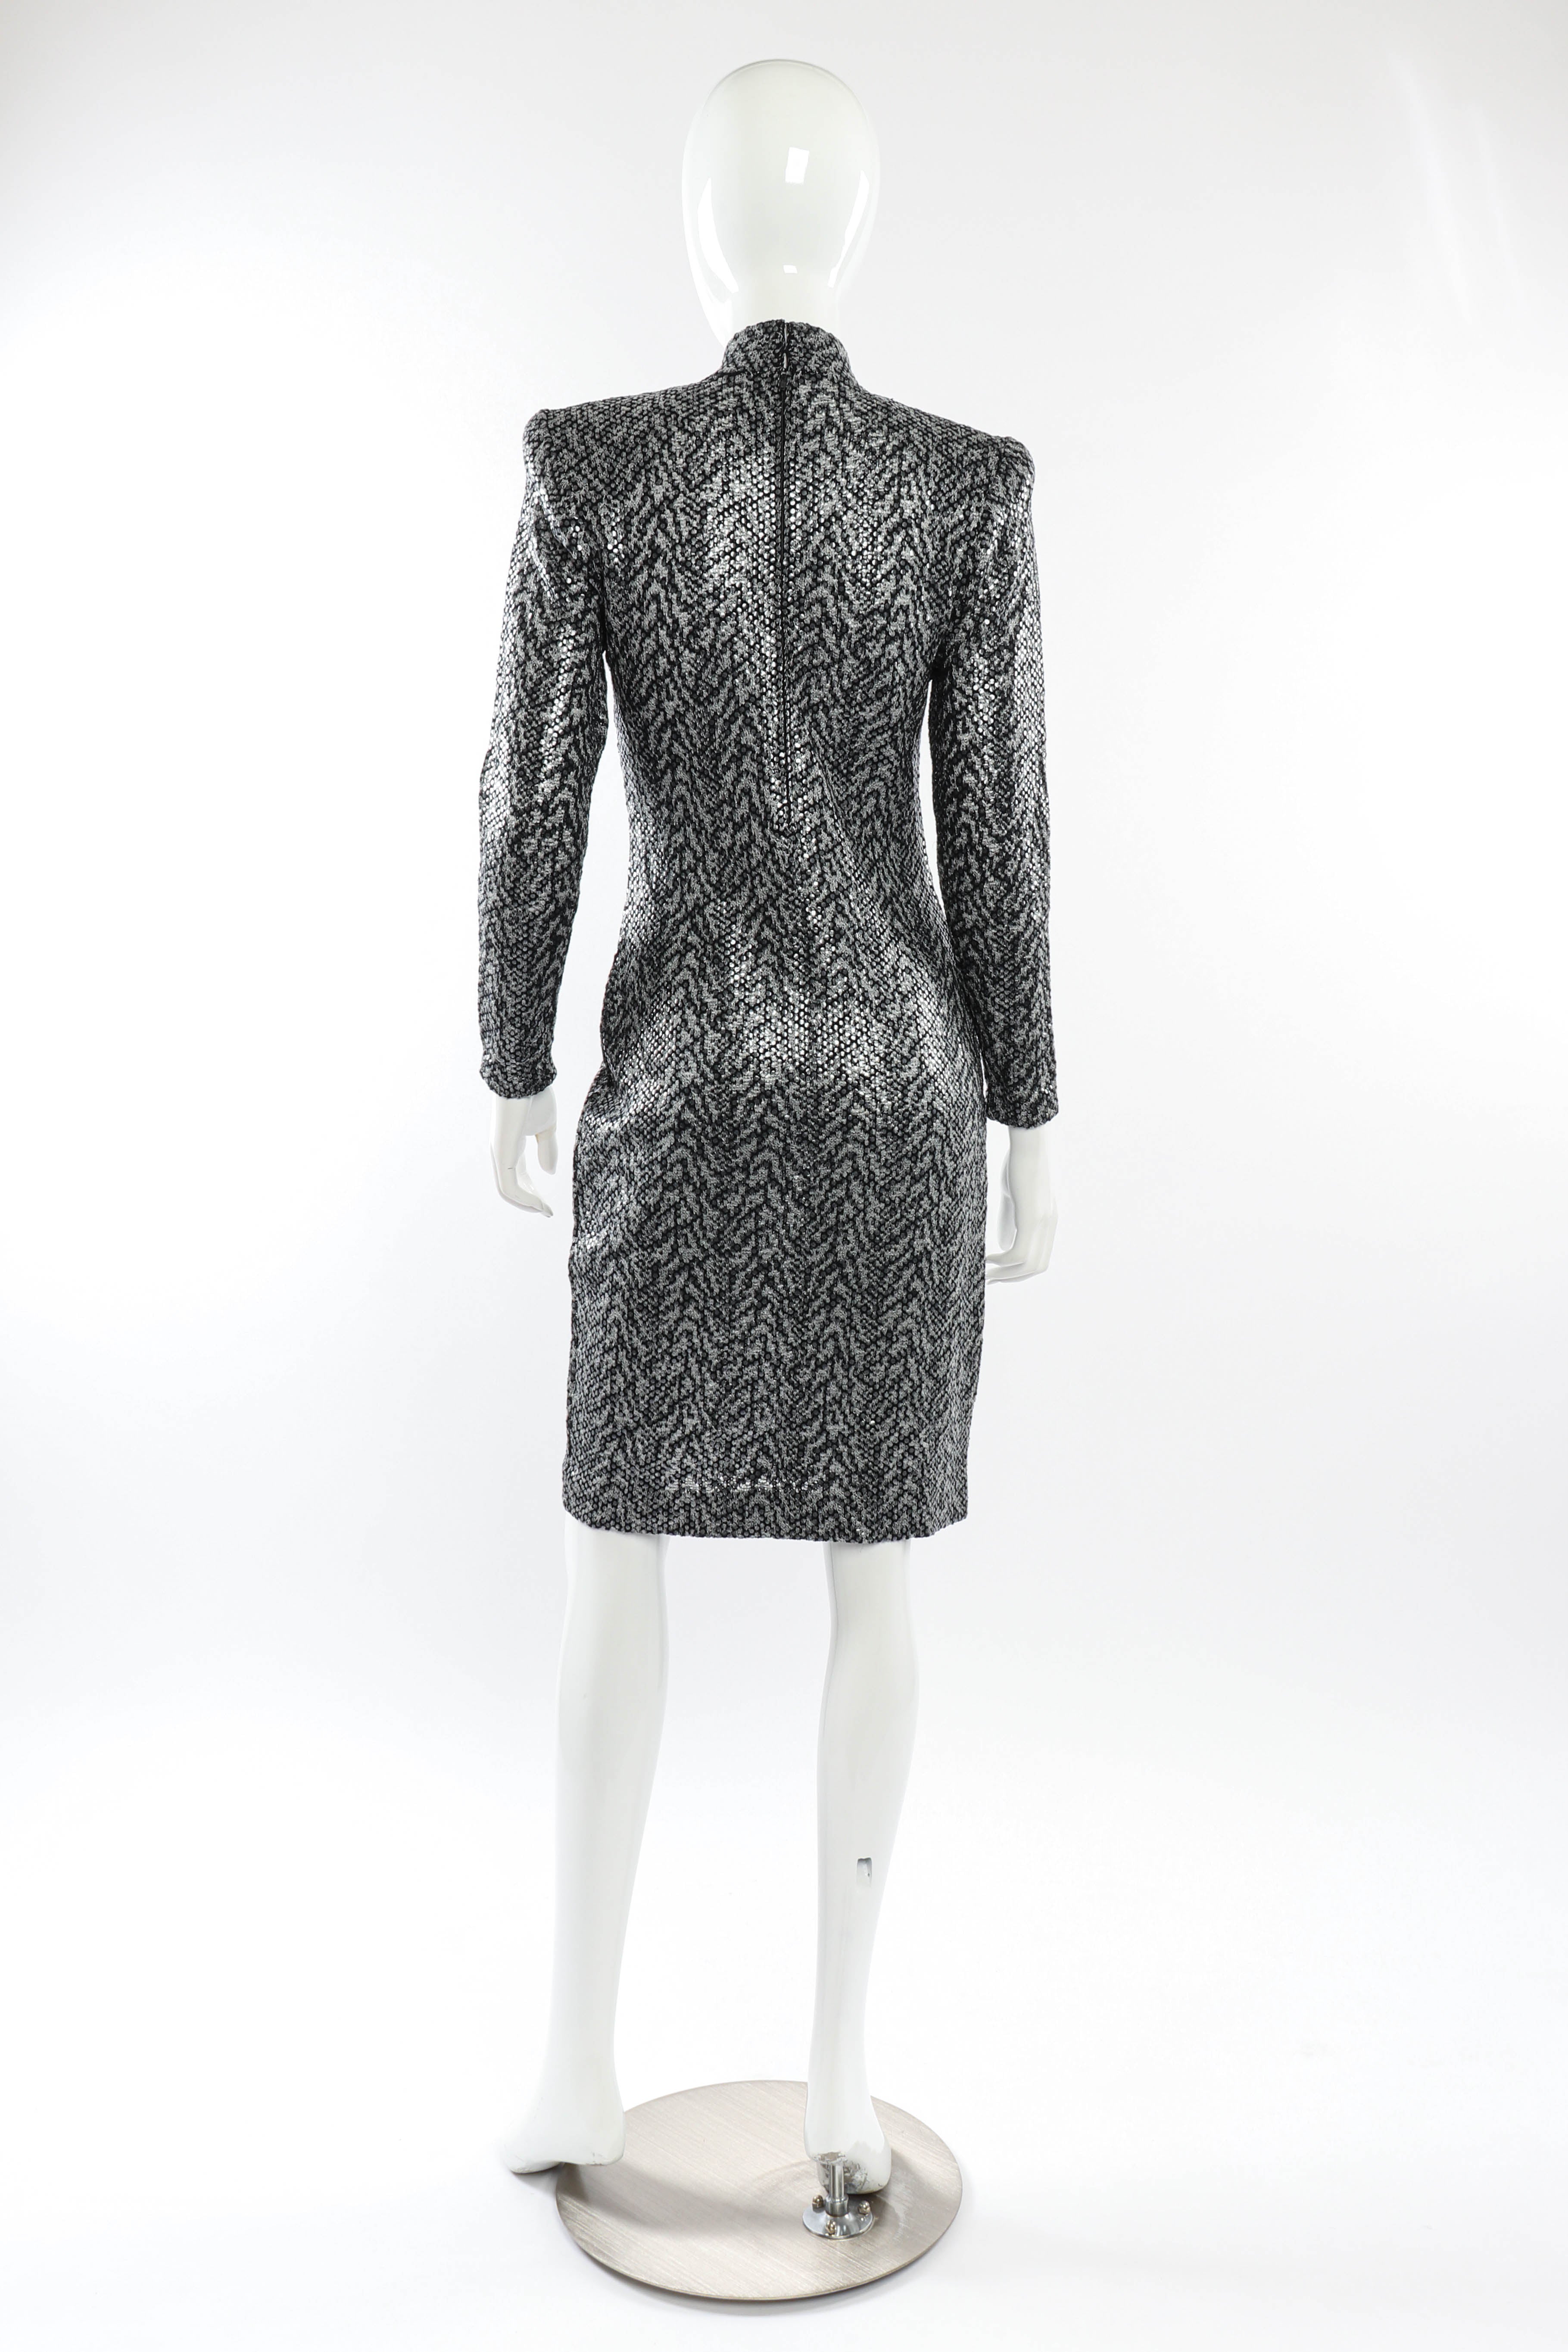 Vintage St. John Tiger Print Sequin Dress back on mannequin @recessla